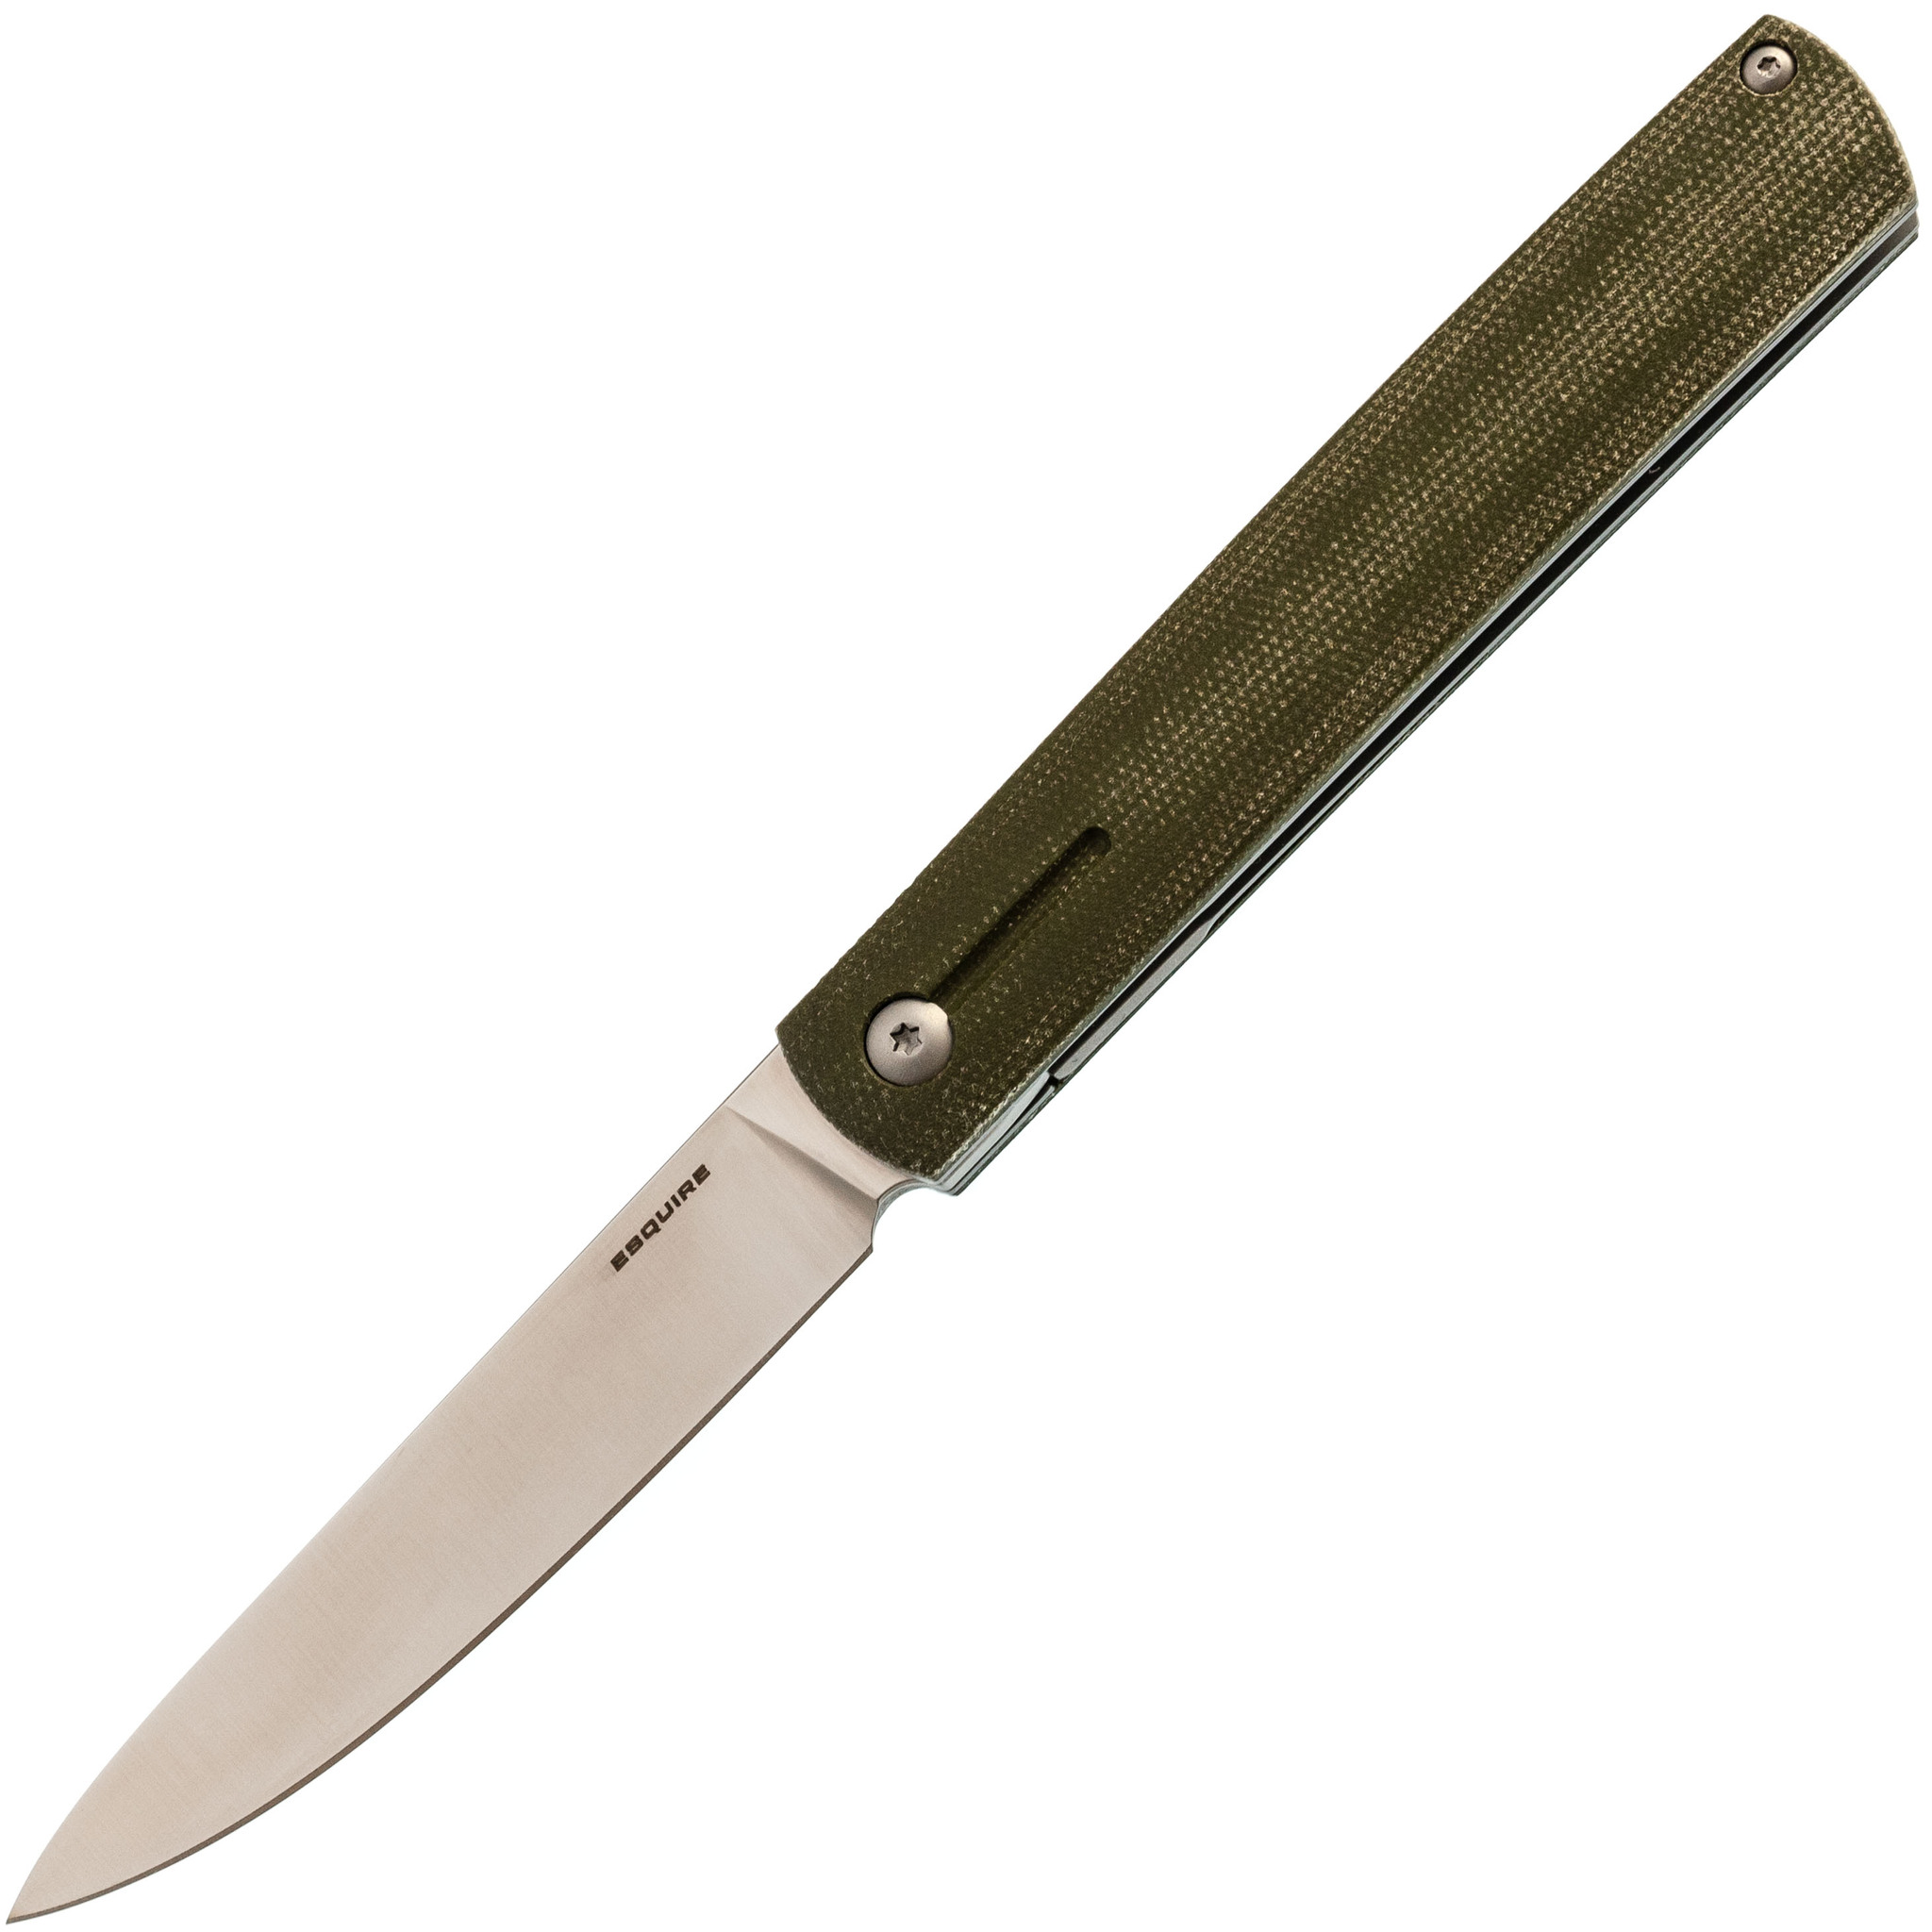   Ножиков Складной нож Mr.Blade Esquire, сталь D2, микарта, зеленый